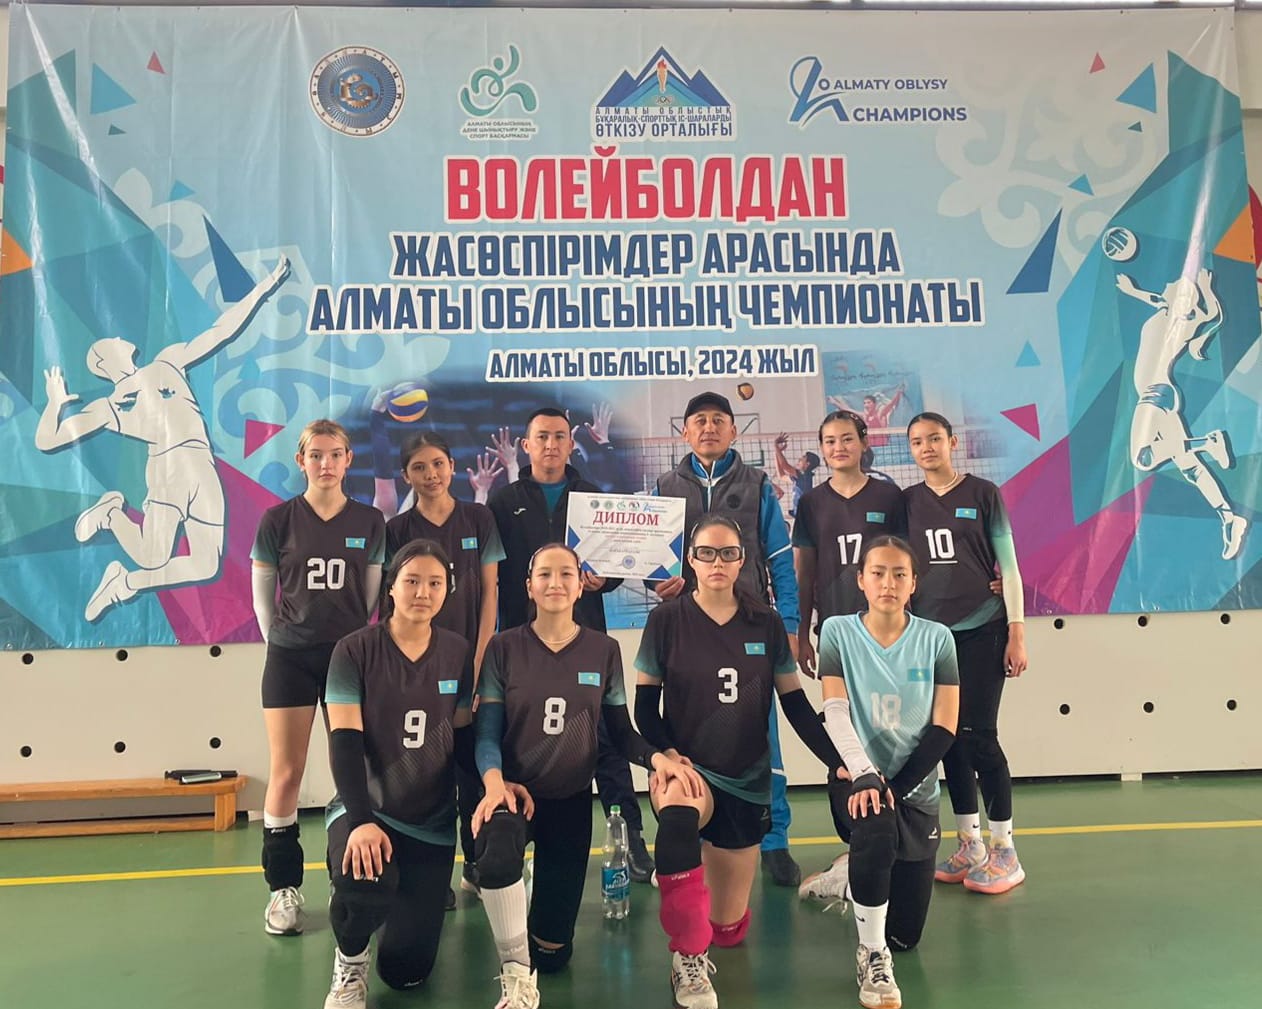 Волейболдан Алматинская областьның көктемгі чемпионатында 7-8 сынып қыздары 1- орын алды